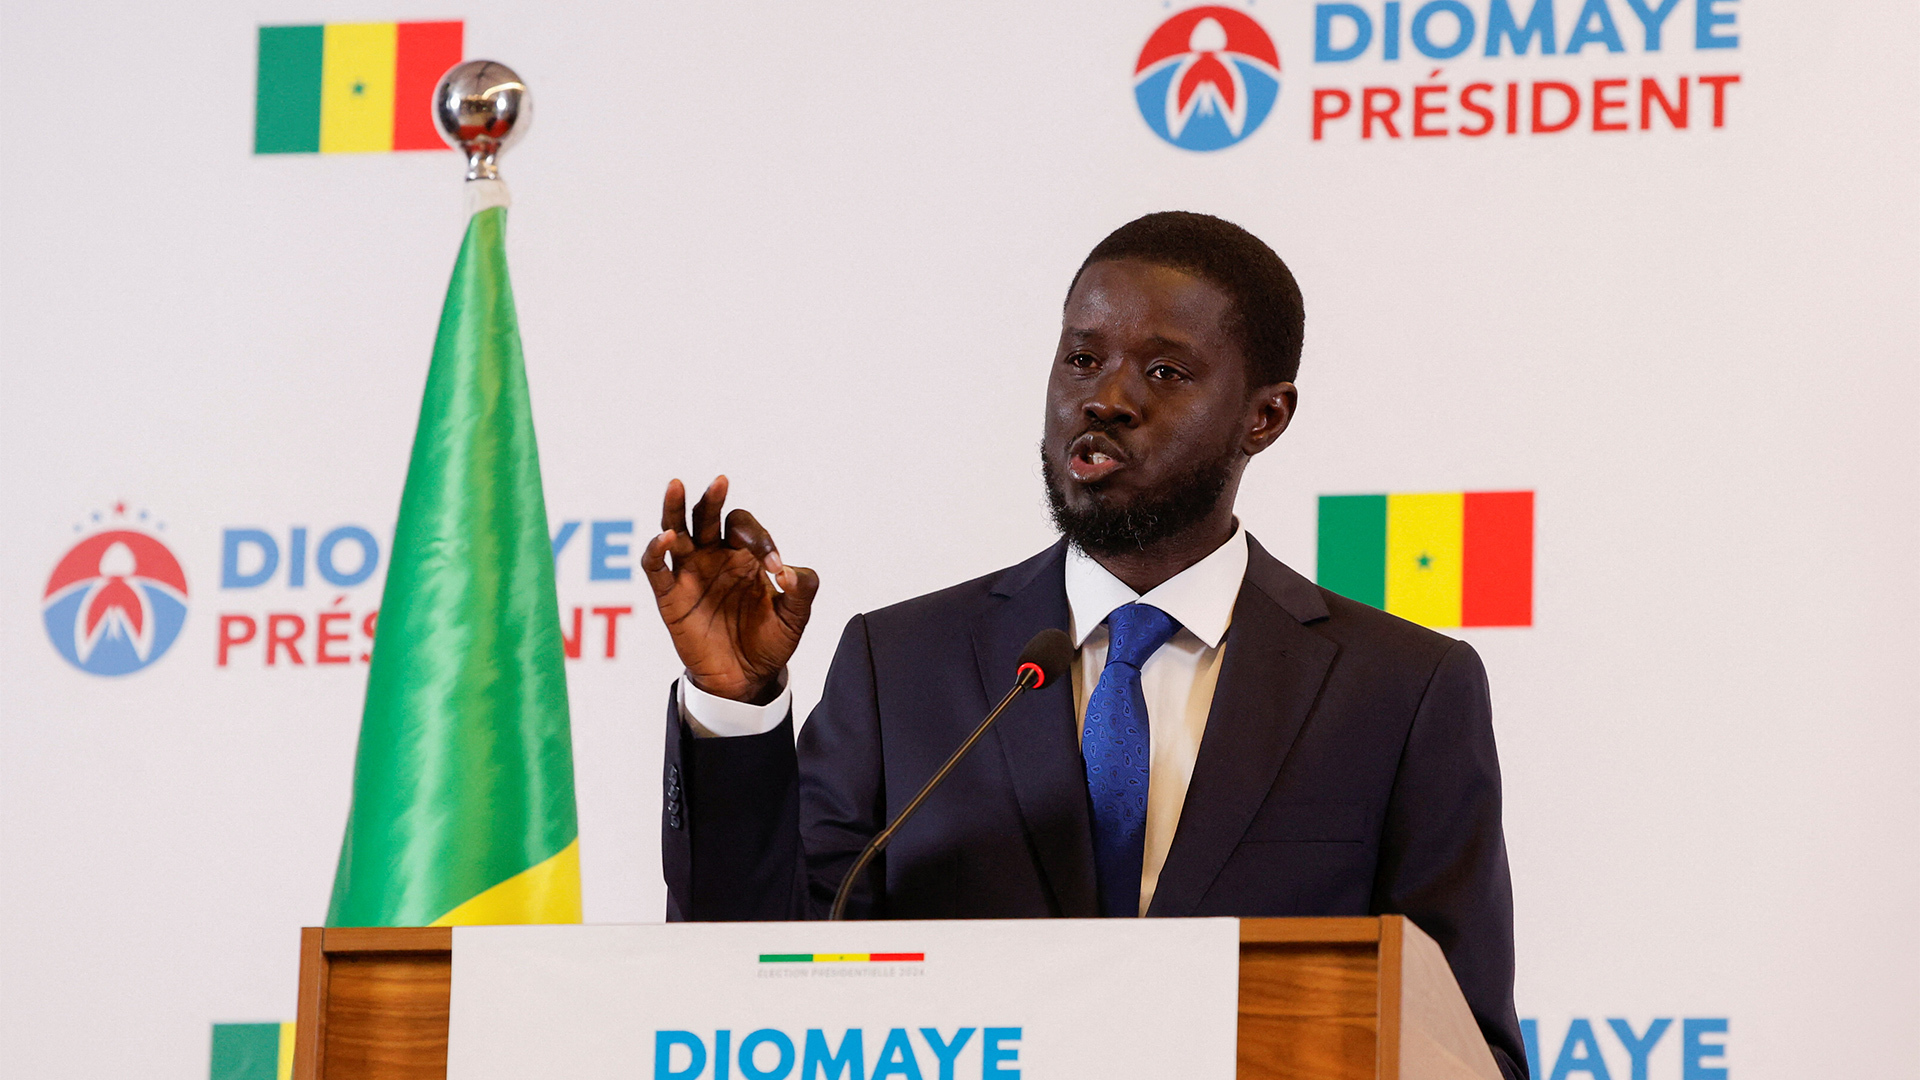 باسيرو ديوماي فاي يفوز بانتخابات الرئاسة في السنغال